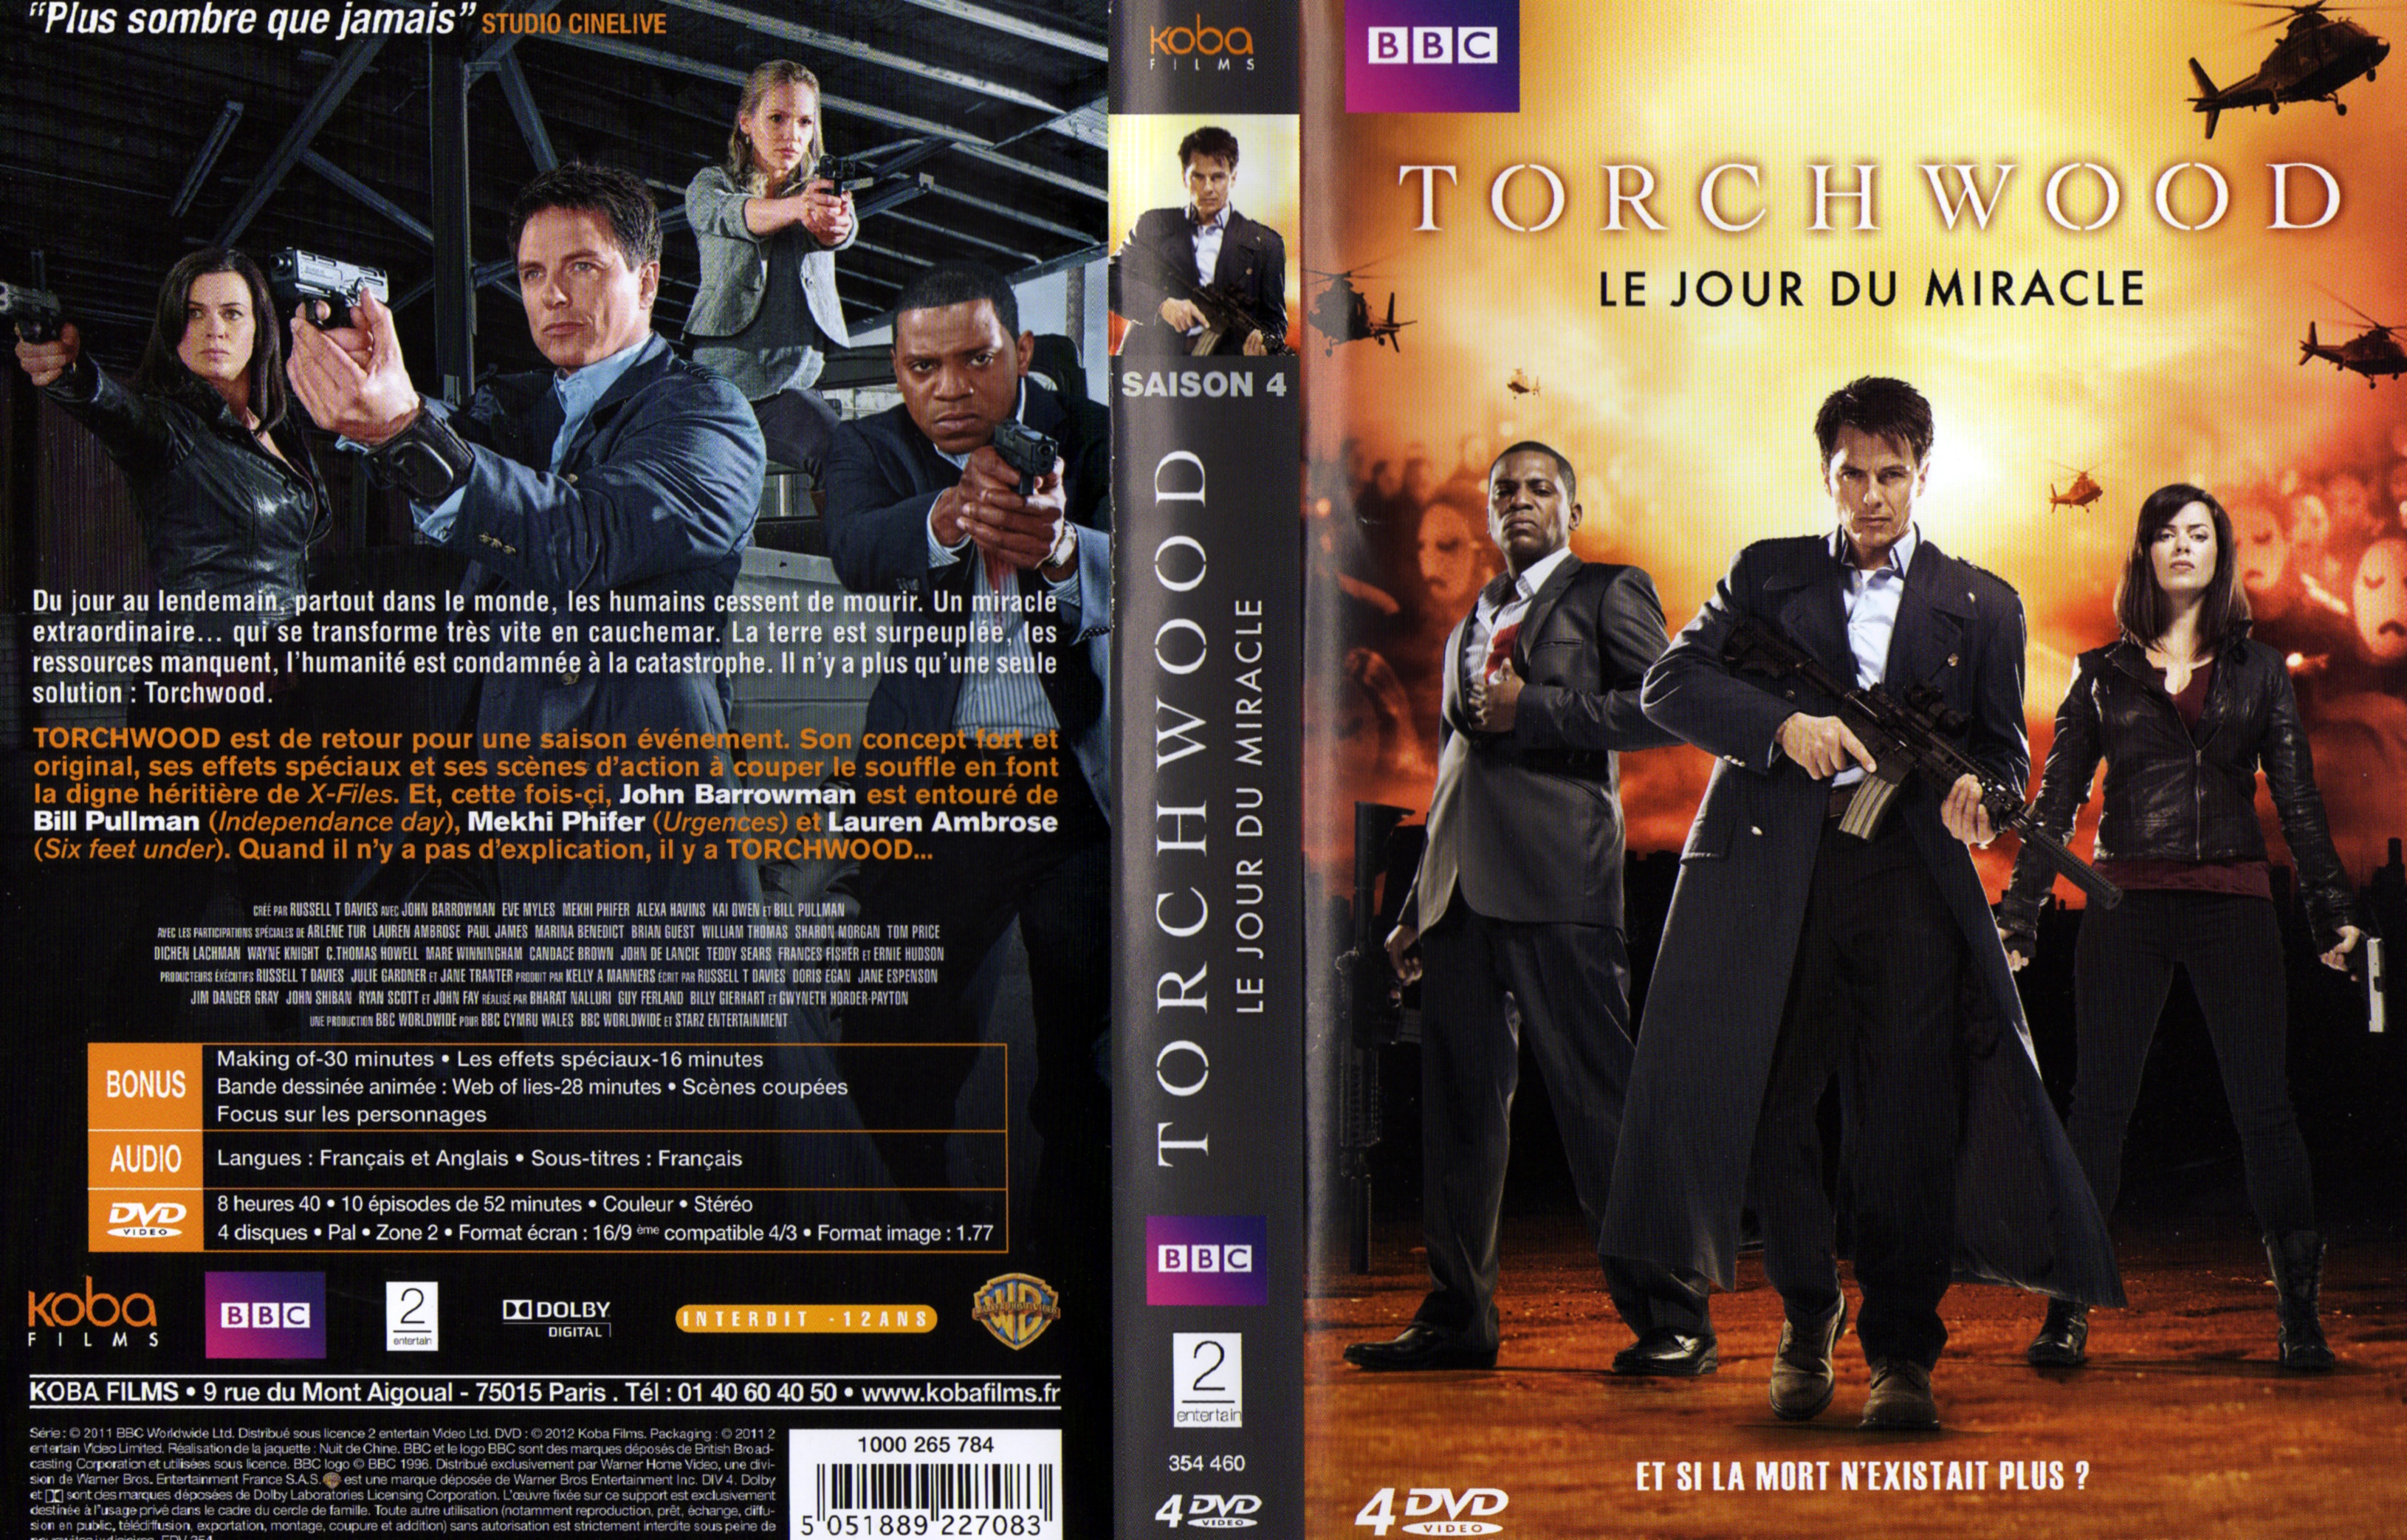 Jaquette DVD Torchwood Saison 4 COFFRET